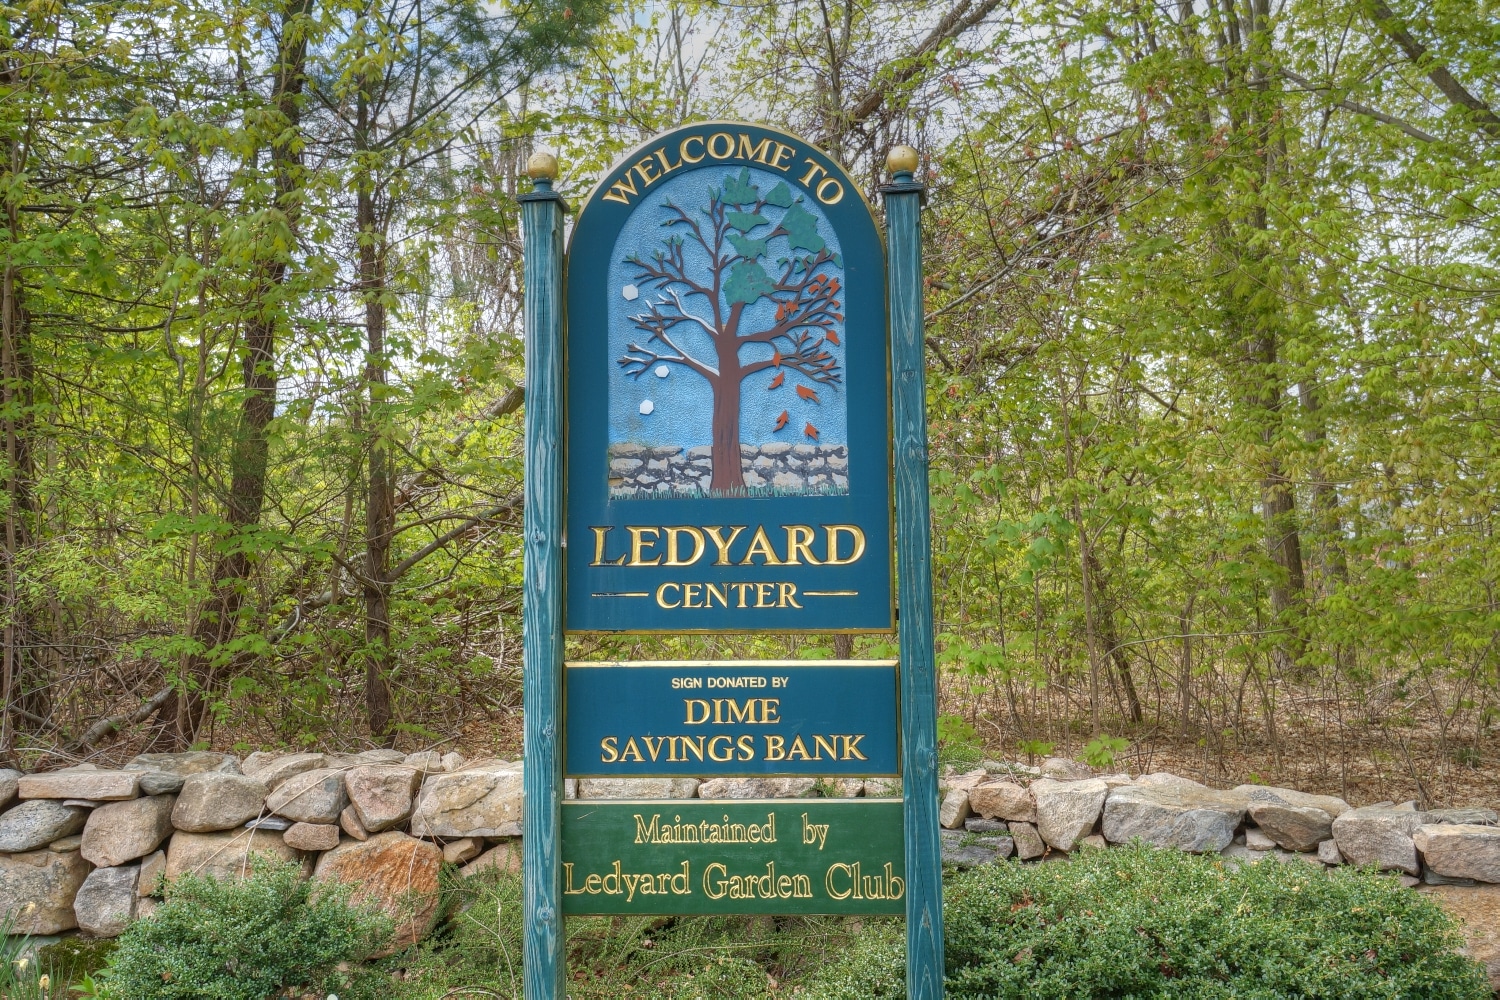 Ledyard CT Real Estate & Homes for Sale Ledyard CT - Top Realtors Ledyard CT